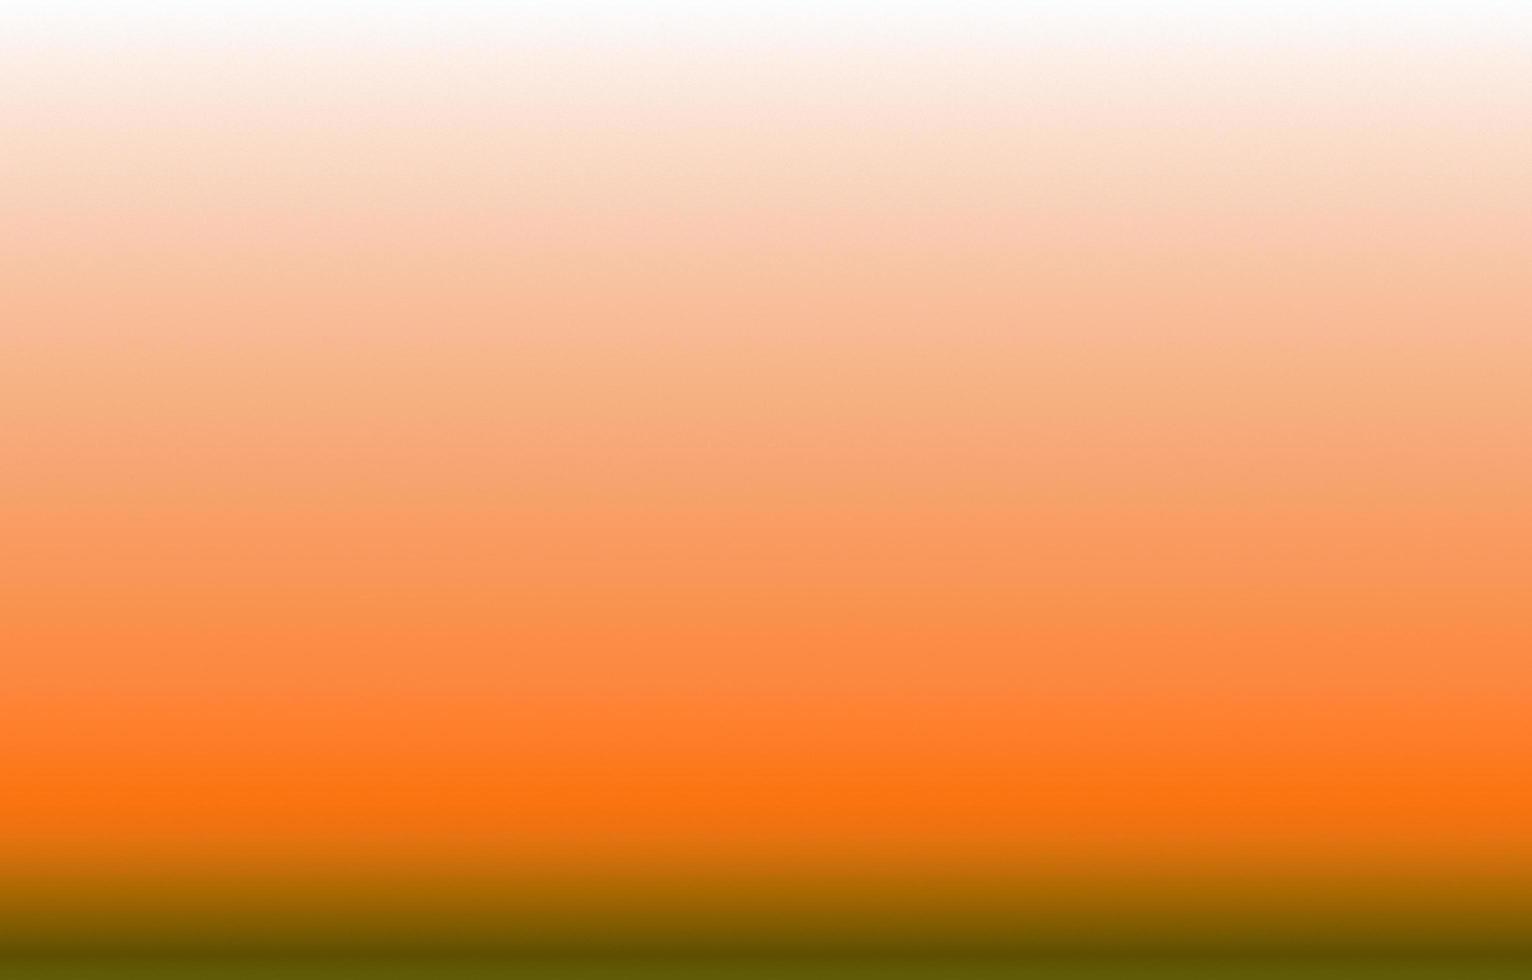 fondo degradado naranja abstracto, ilustración abstracta con diseño de desenfoque degradado, degradado colorido foto